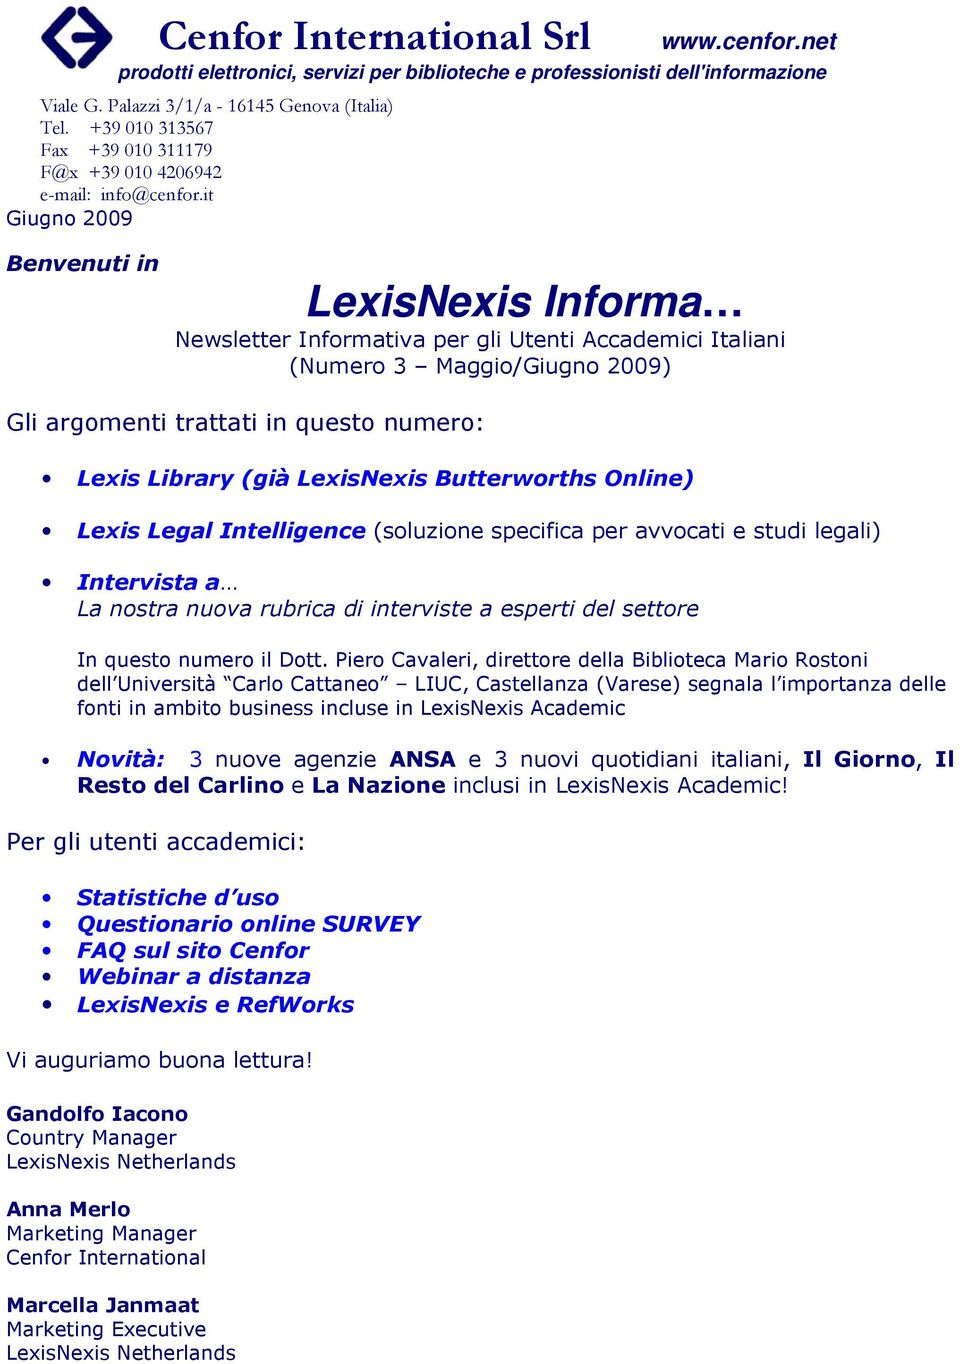 LexisNexis Butterworths Online) Lexis Legal Intelligence (soluzione specifica per avvocati e studi legali) Intervista a La nostra nuova rubrica di interviste a esperti del settore In questo numero il